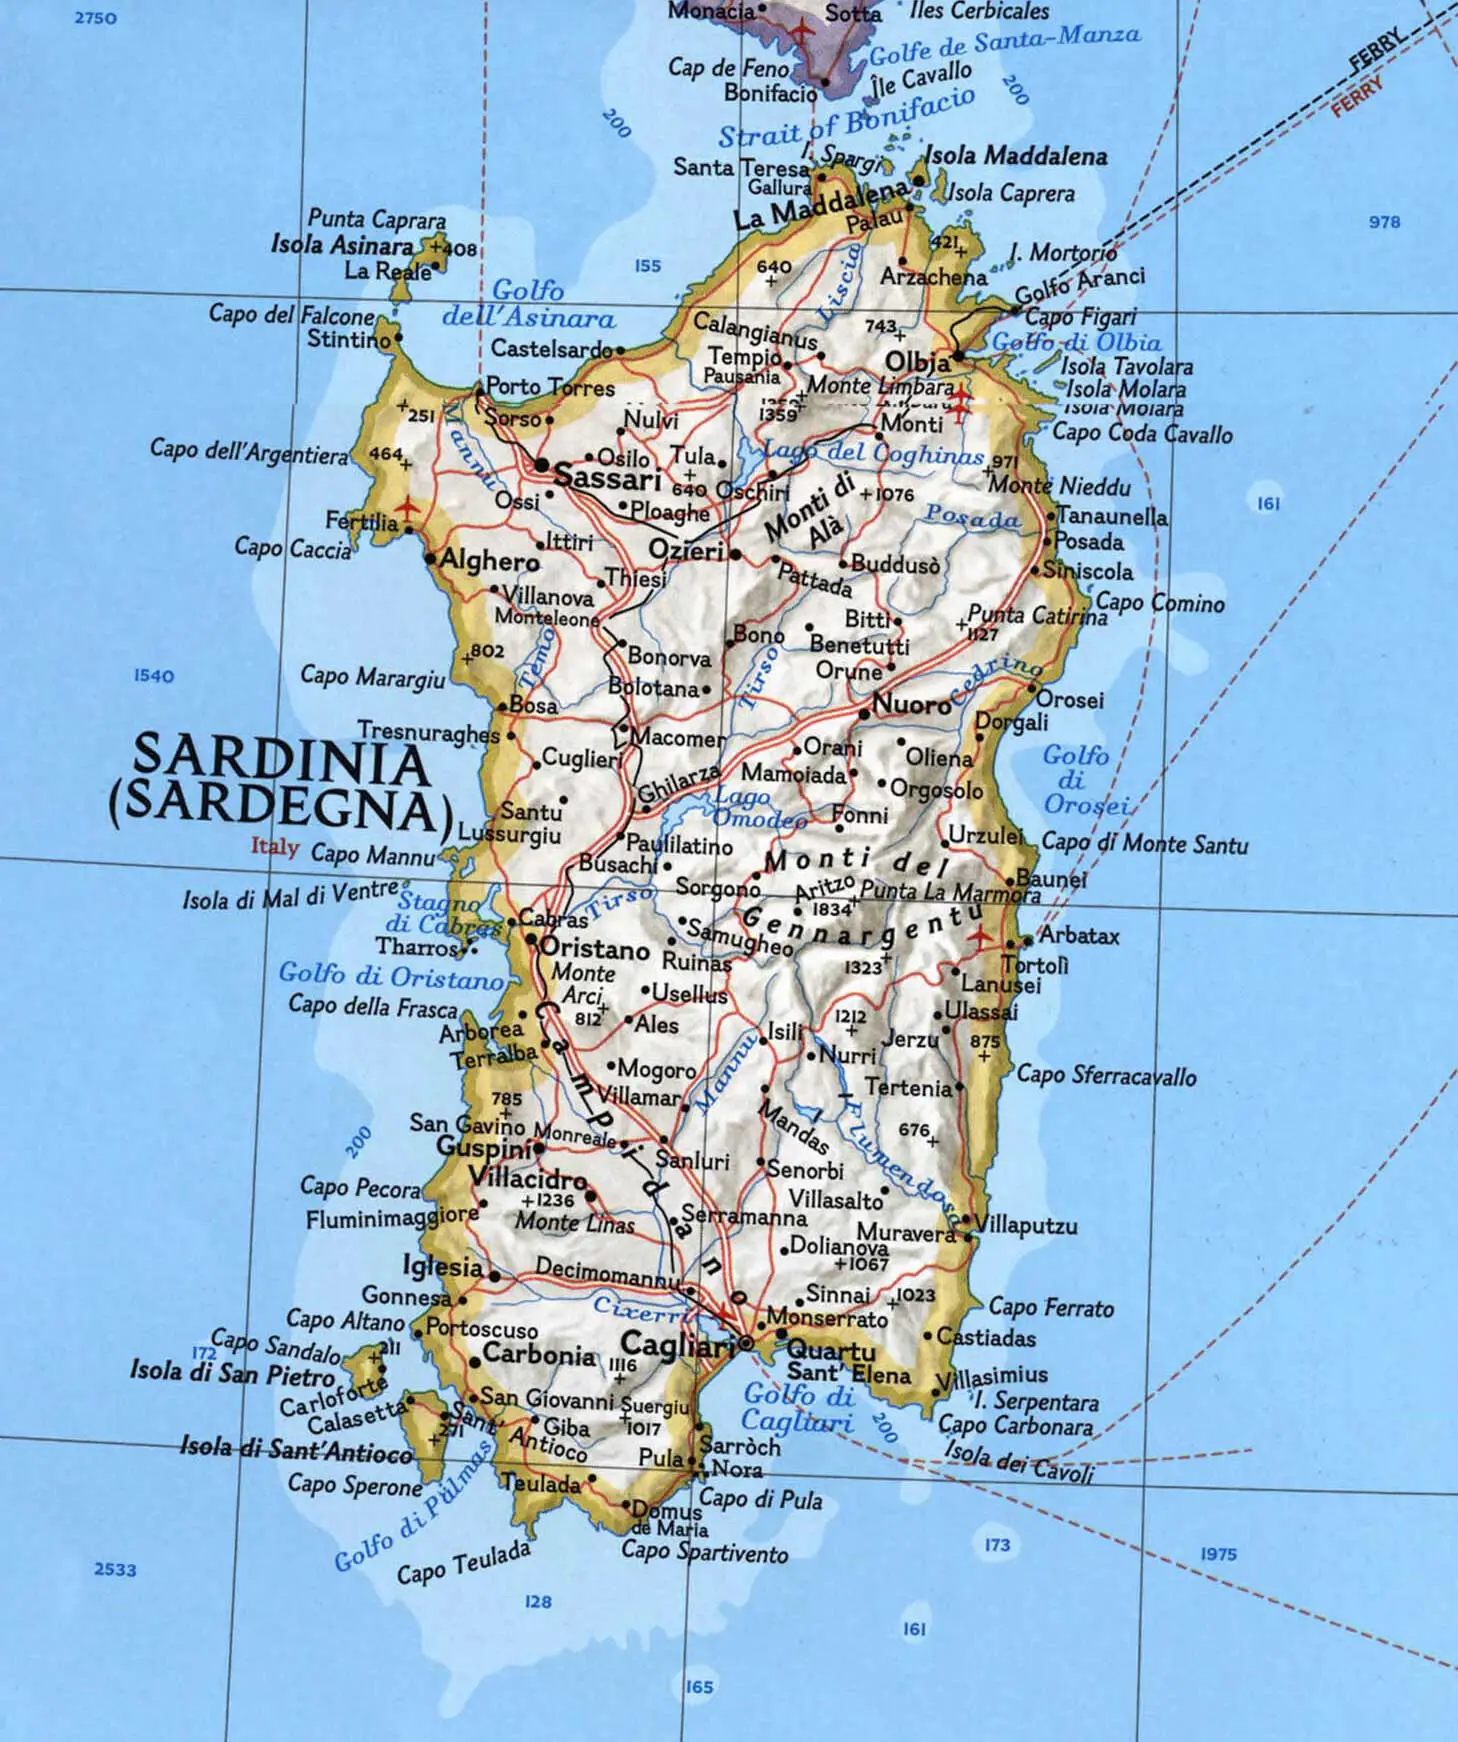 Sardinia Map - MapSof.net